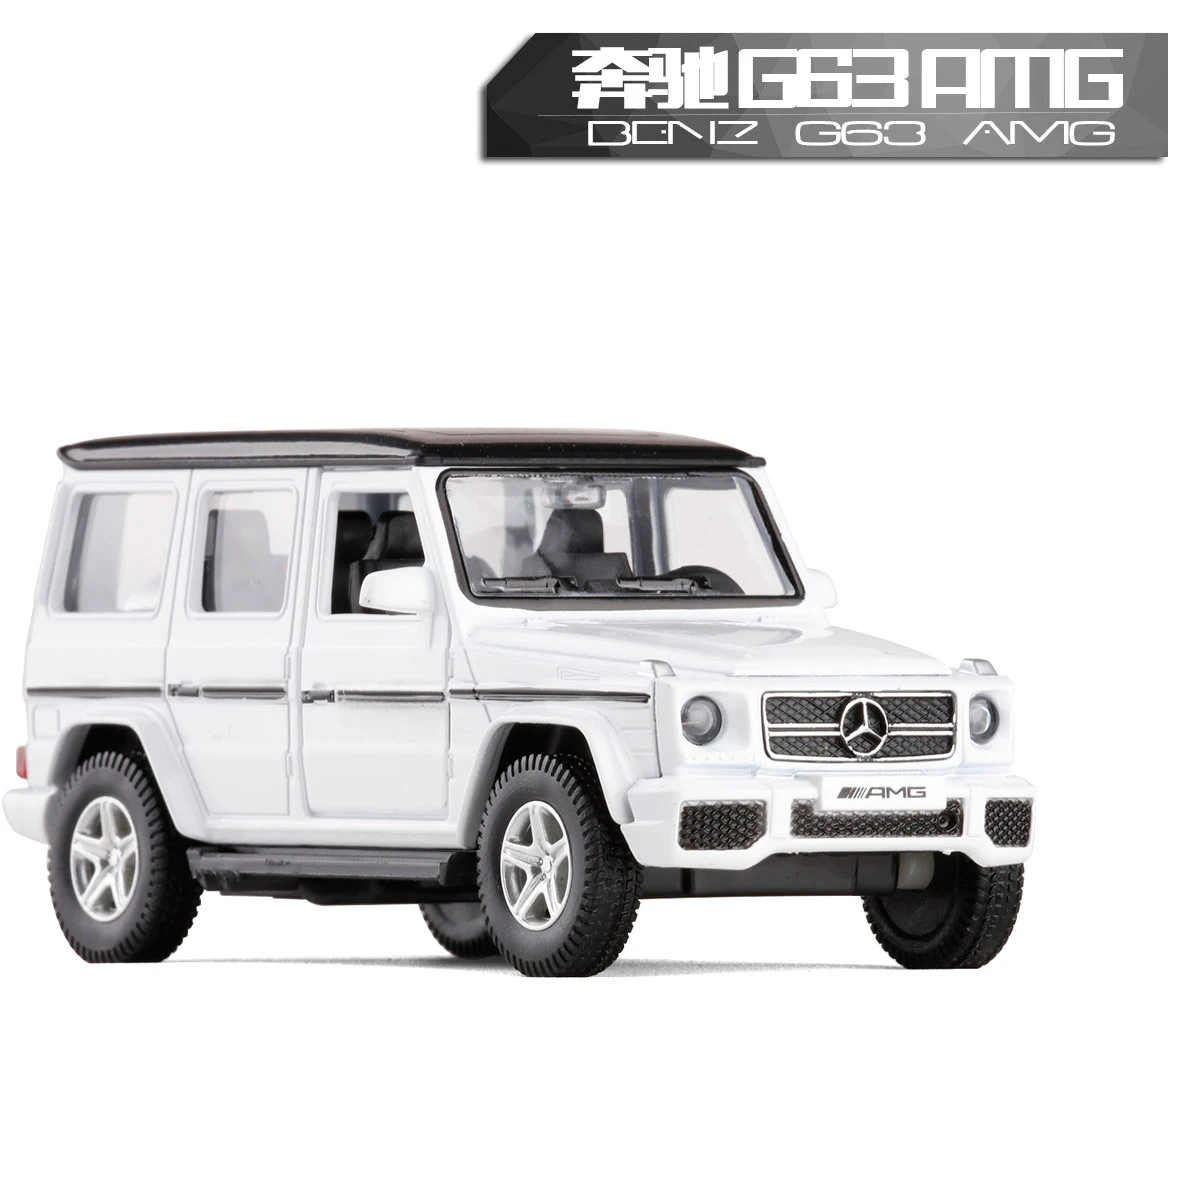 Высокая моделирования РМЗ город 1:36 Металл Benz AMG G63 литья под давлением модель игрушечного автомобиля классический сплав внедорожник модель отлично подходит для детей Подарки - Цвет: white